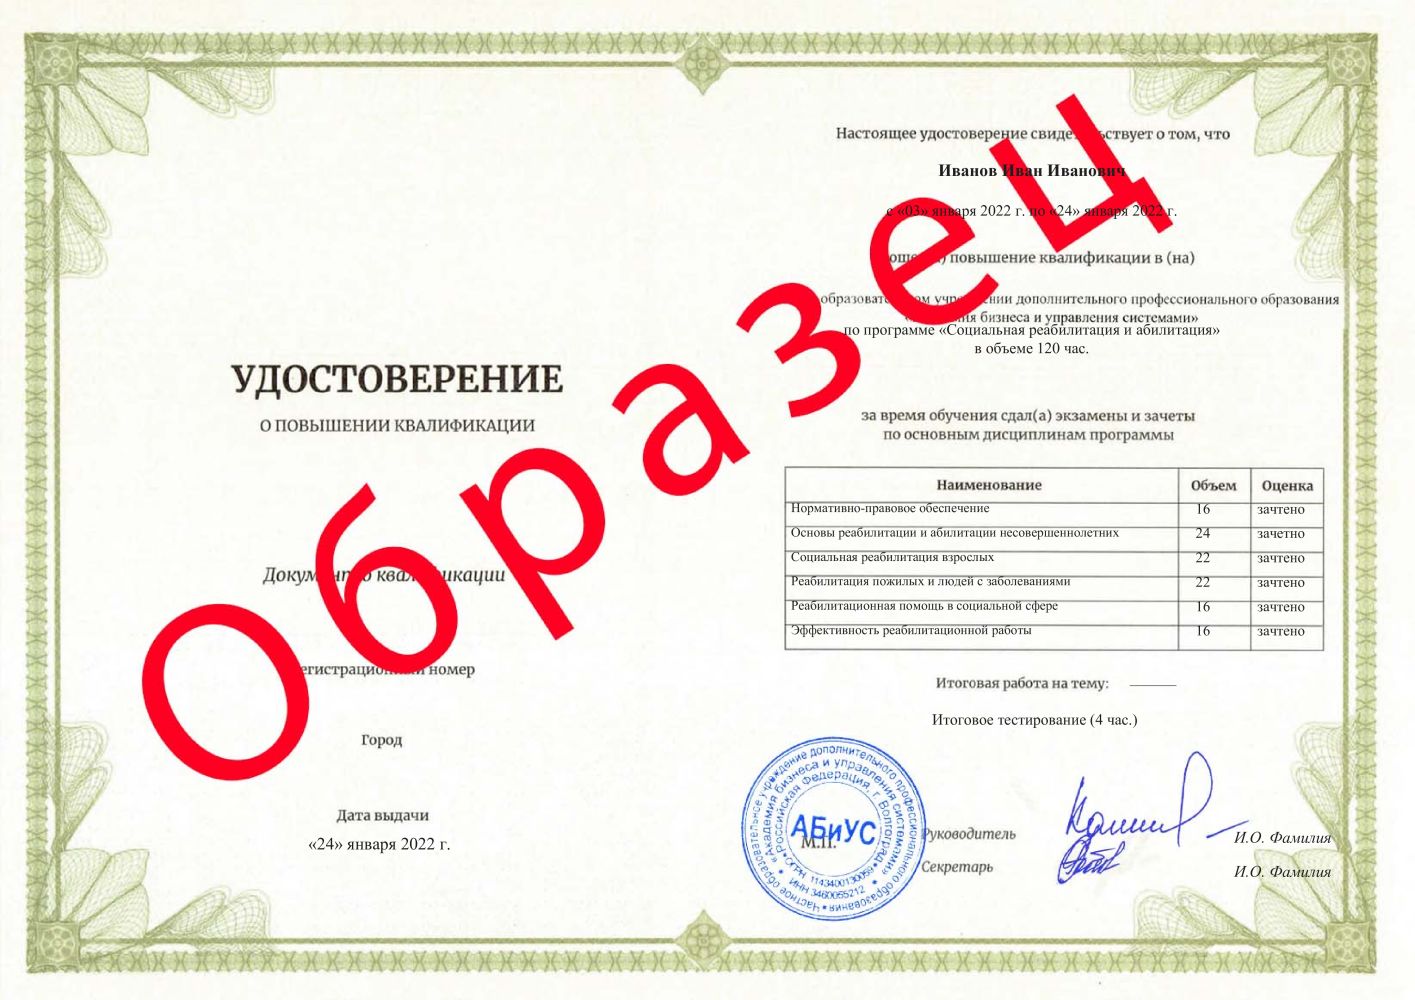 Удостоверение Социальная реабилитация и абилитация 120 часов 5067 руб.